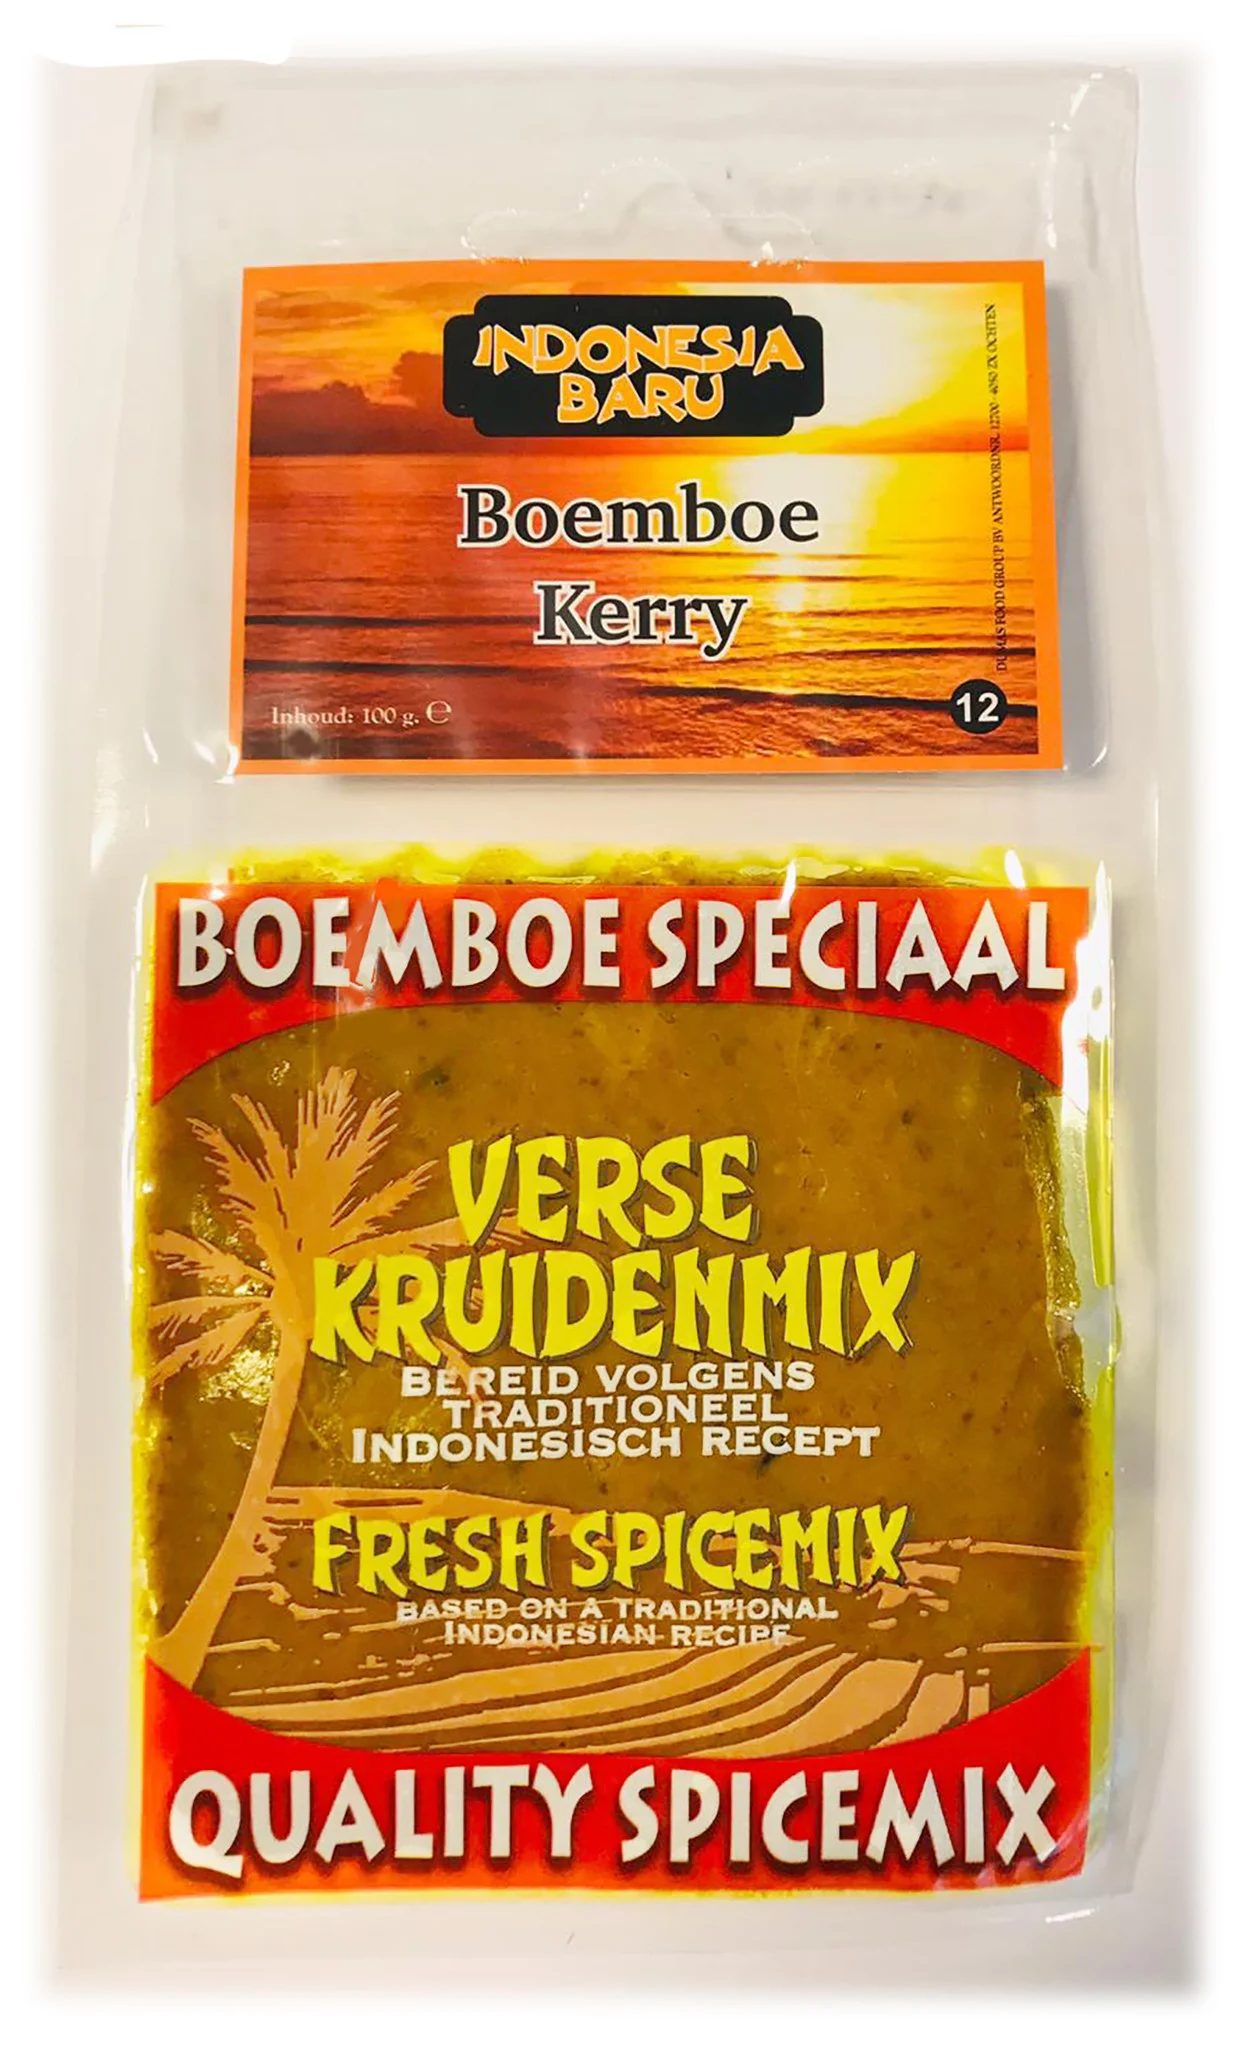 Boemboe Kerry